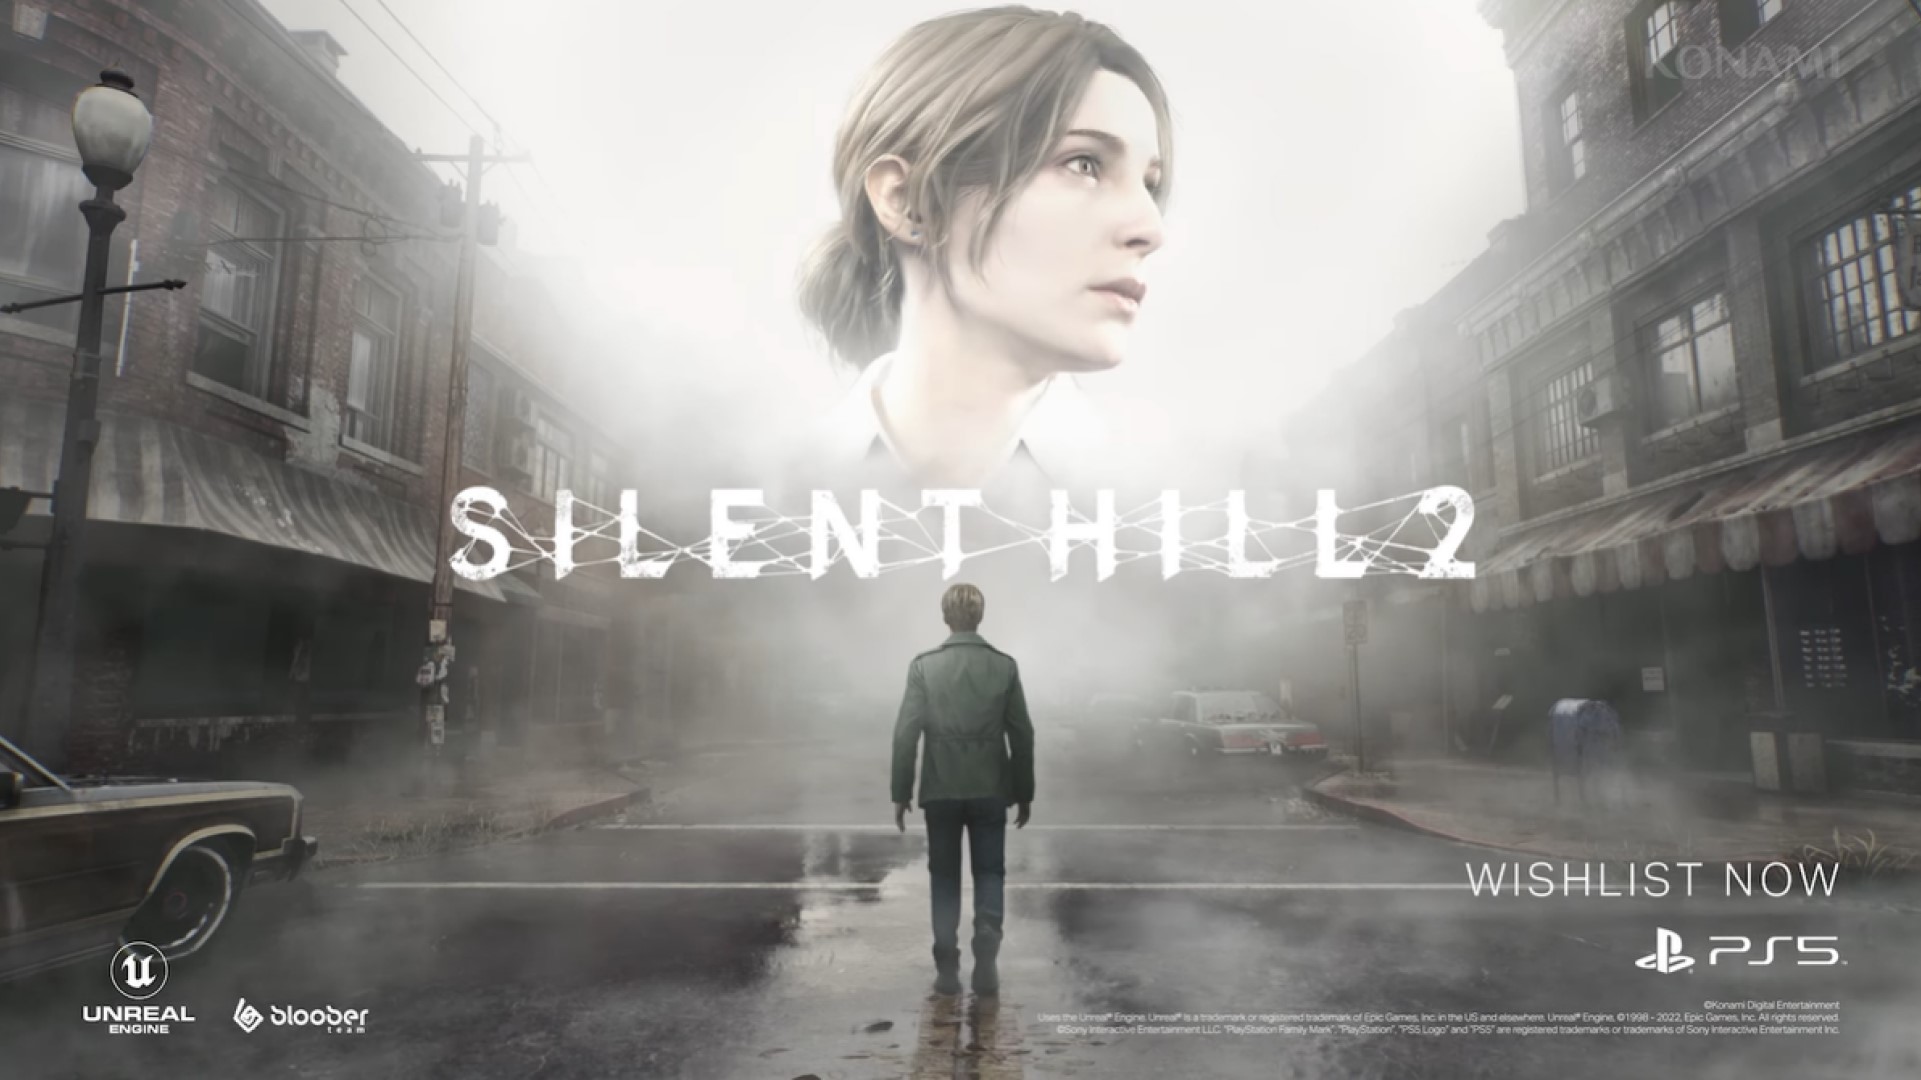 Plotka: remake Silent Hill 2 może zostać zaprezentowany podczas majowego wydarzenia PlayStation